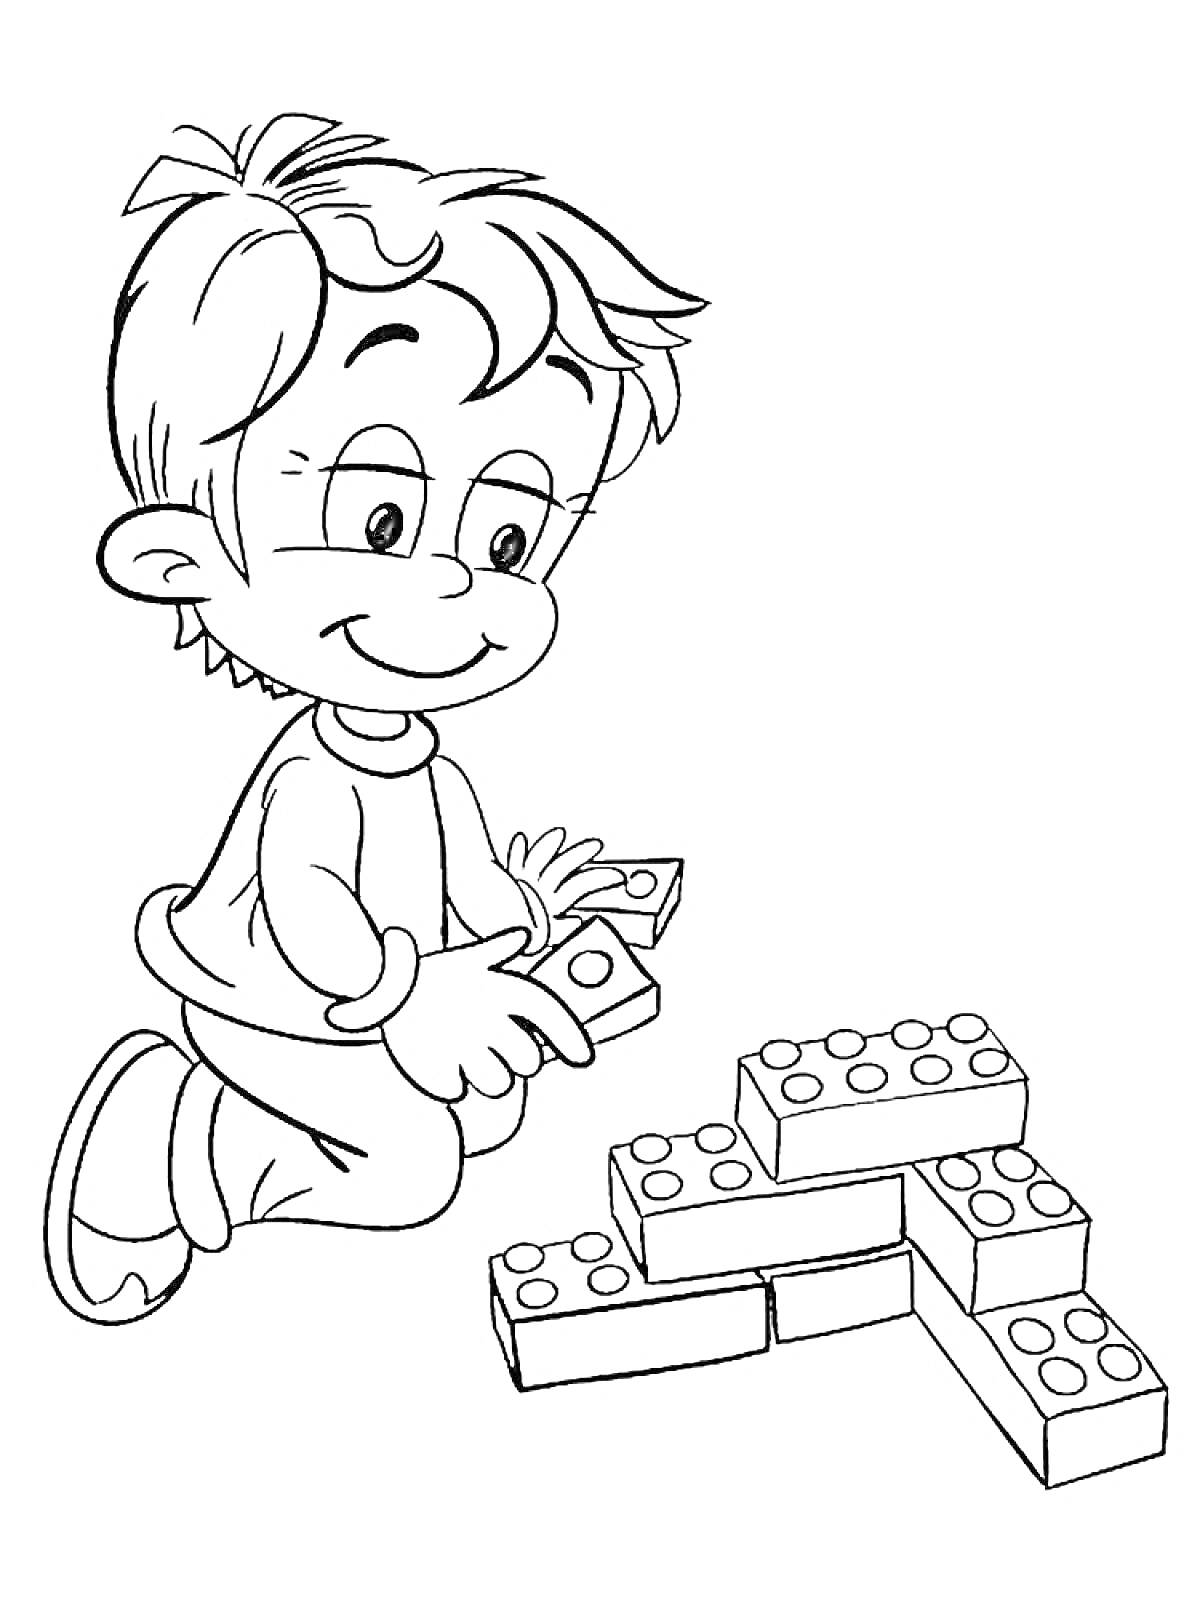 Ребёнок играющий в кубики